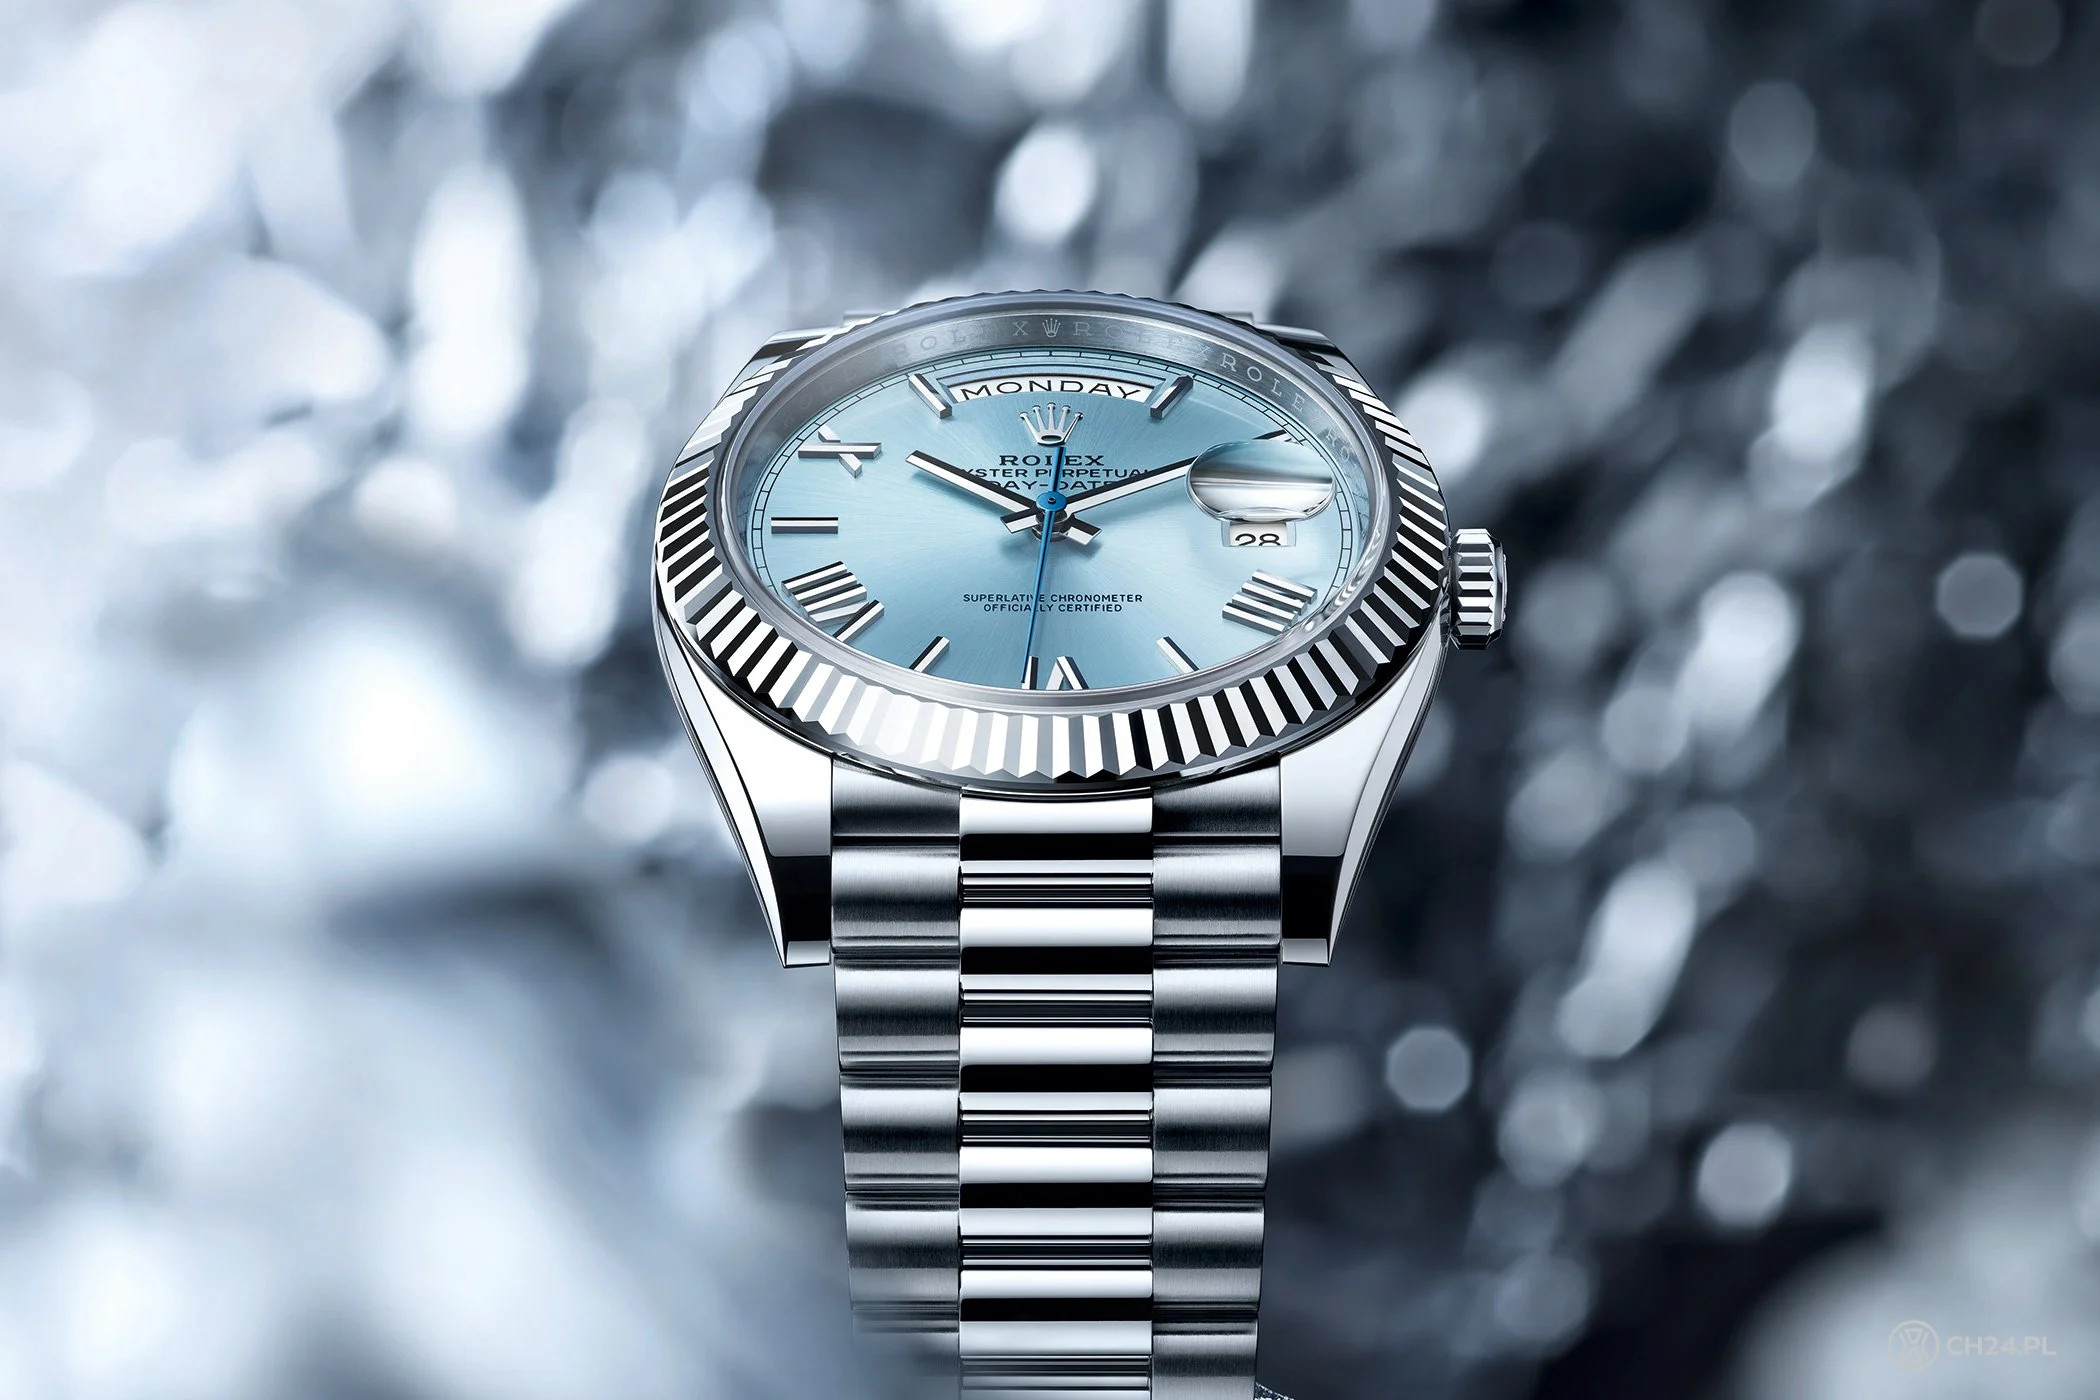 5 chiếc đồng hồ mặt số màu xanh “Ice-blue” mới nhất từ Breitling, Rolex, Cartier, Lange & Söhne và Omega